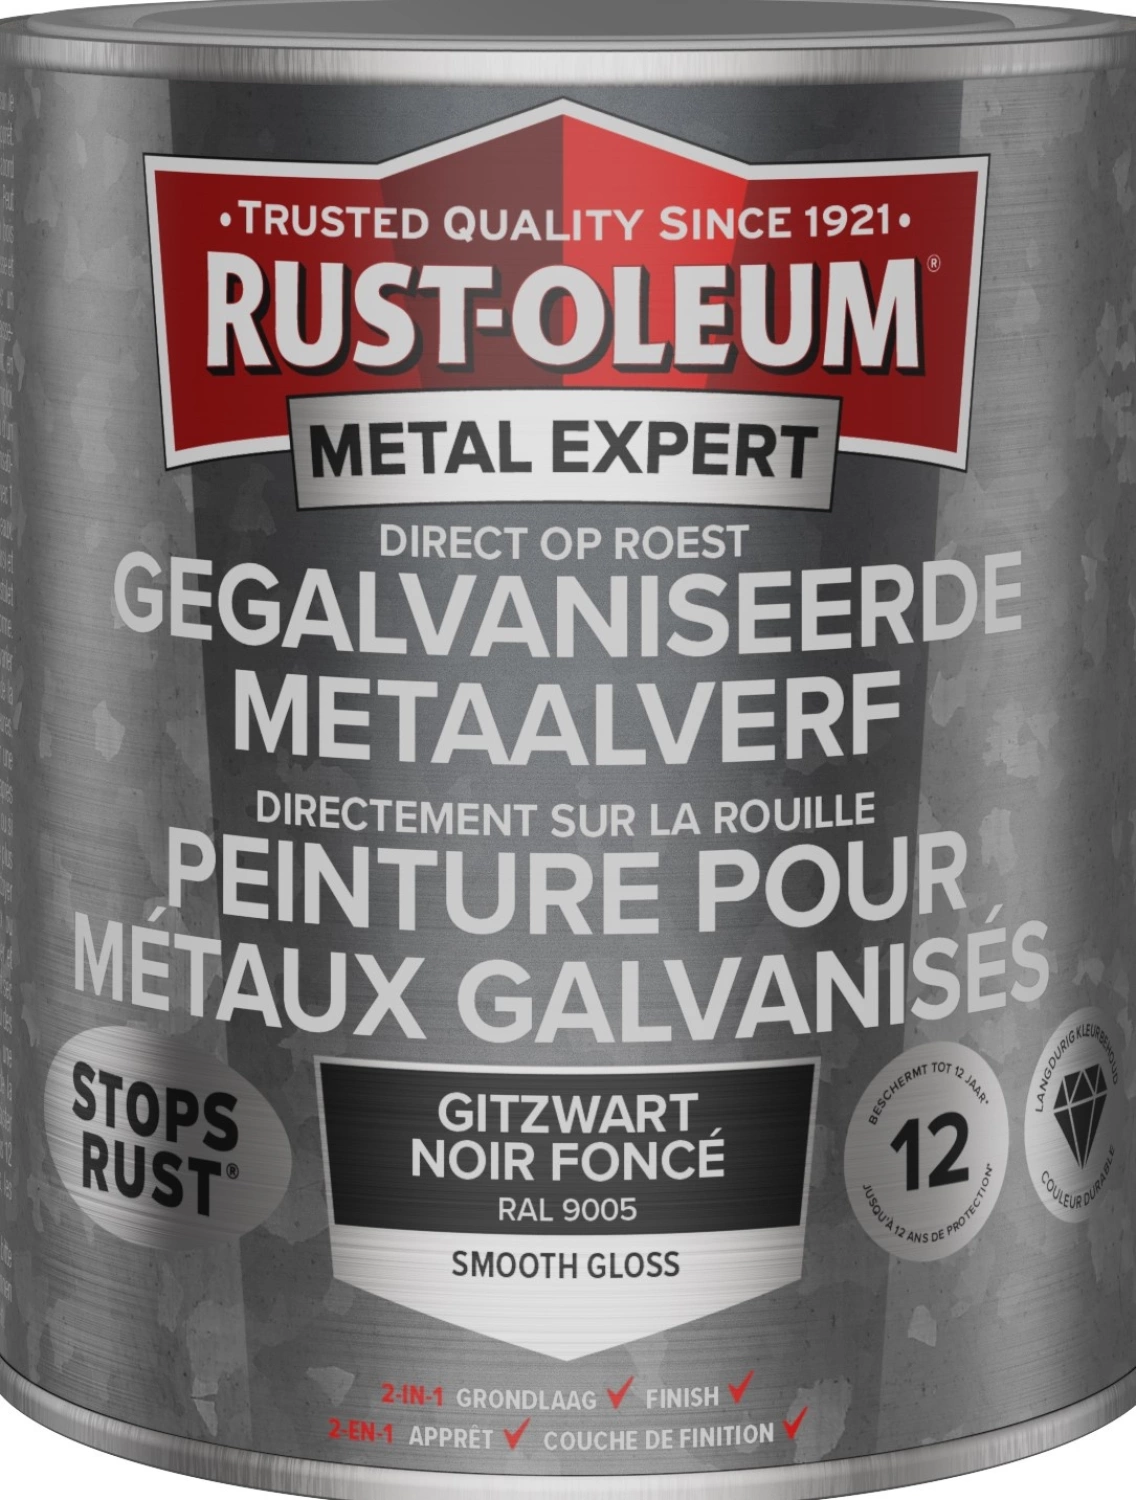 Rust-Oleum Gegalvaniseerde Metaalverf - RAL 9005 gitzwart - 0,75L